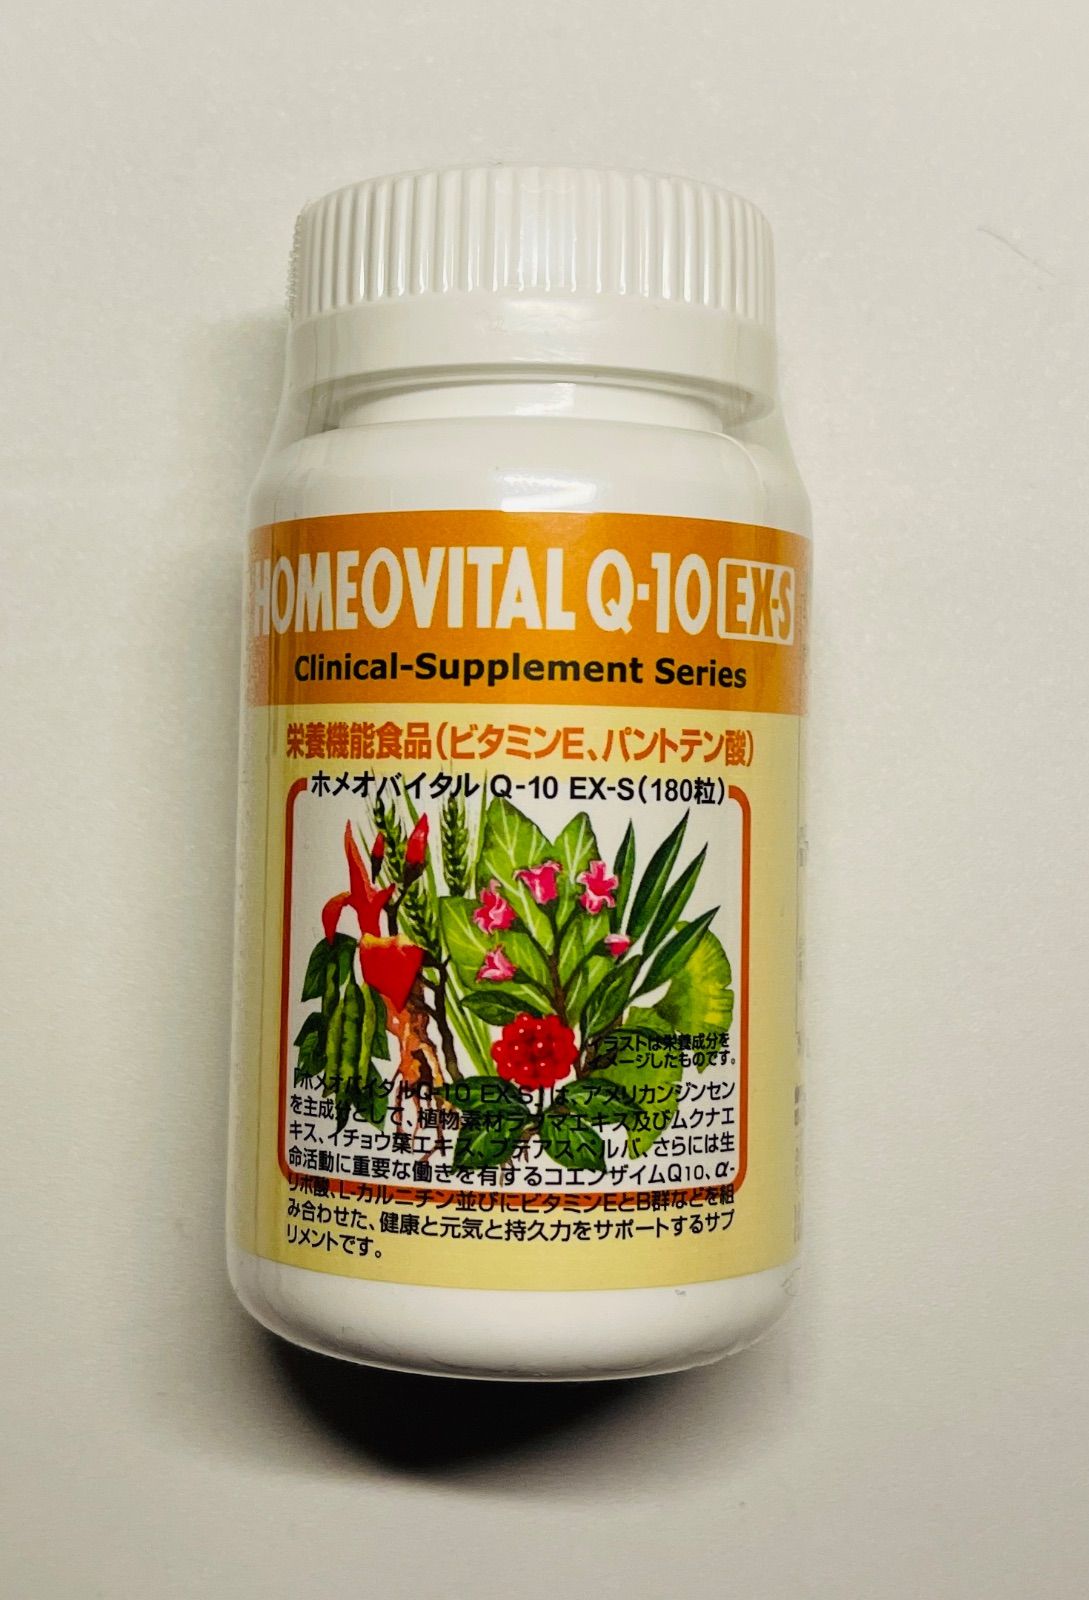 ウイズ株式会社 ホメオバイタルQ-10 EX-S 栄養機能食品 - 健康用品